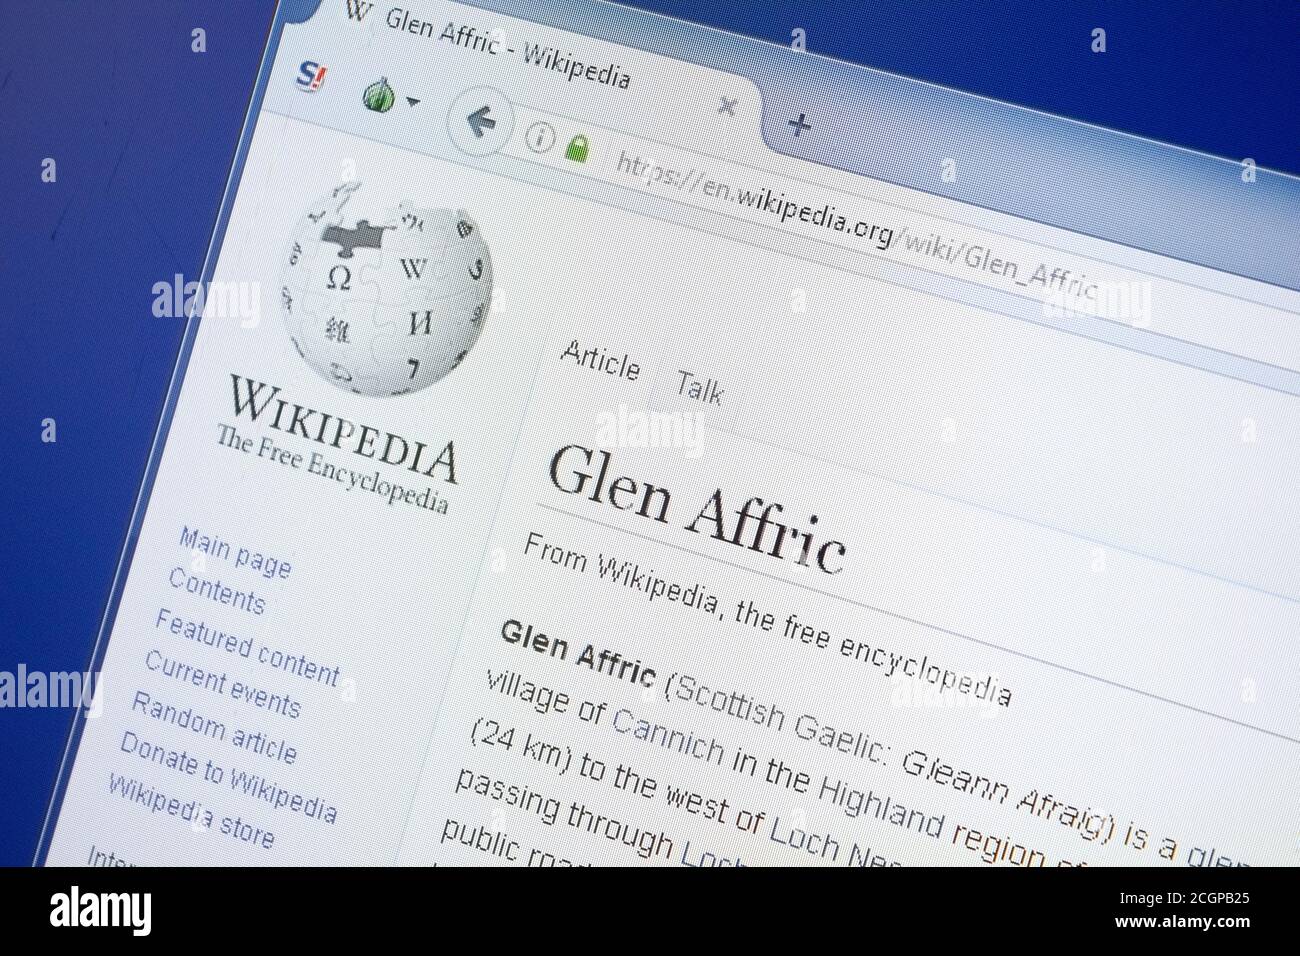 Glen Affric - Wikipedia